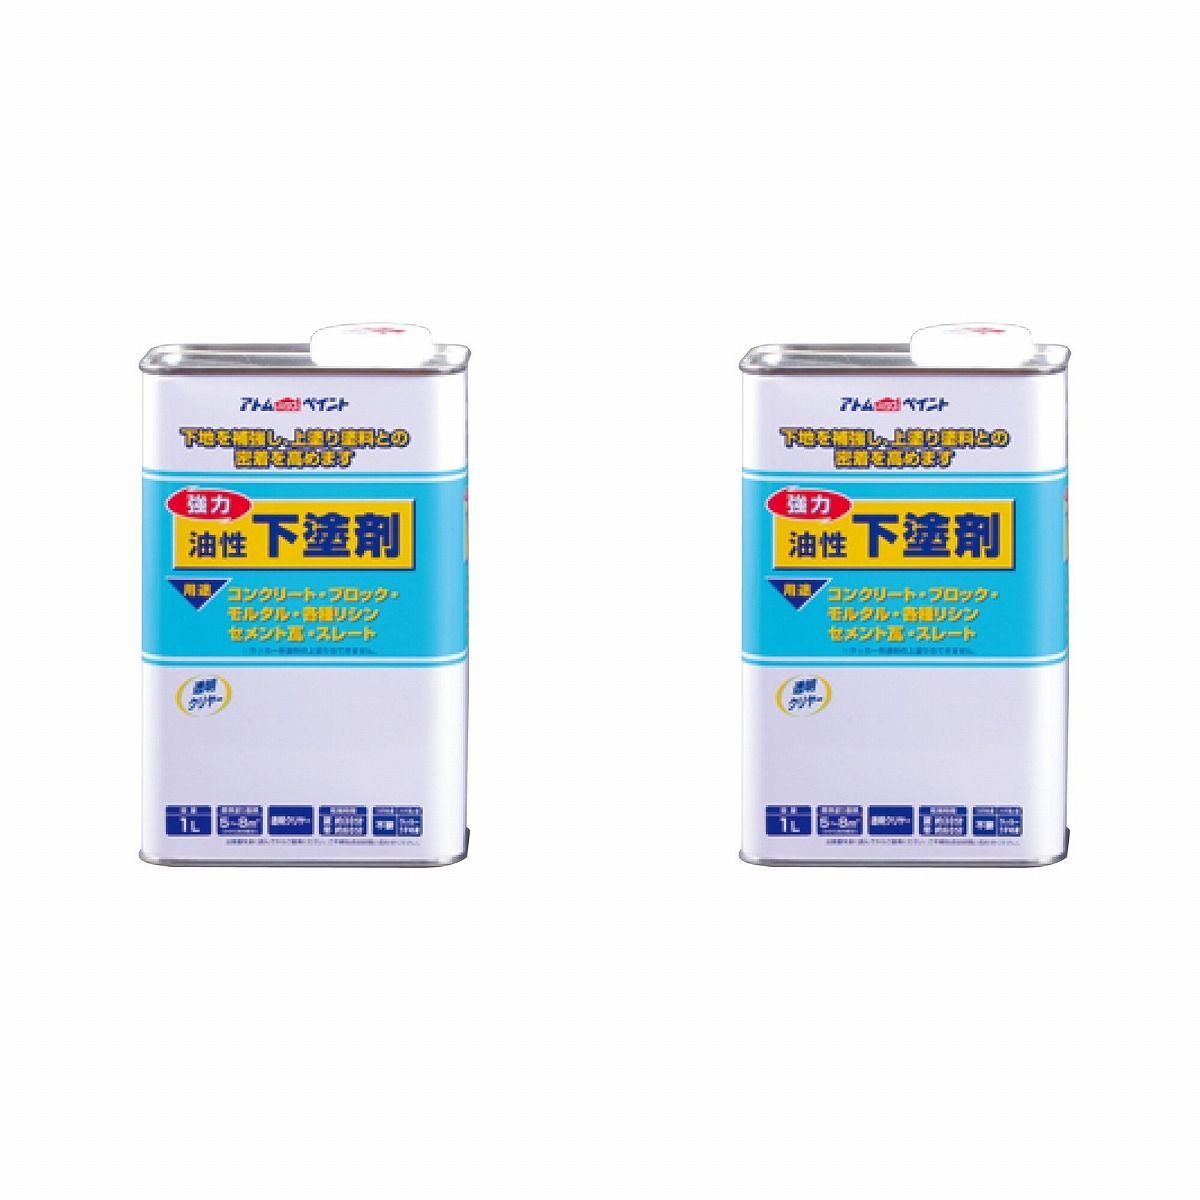 アトムハウスペイント 油性下塗剤 1L 2缶セット【BT-56】 バックティースショップ メルカリ